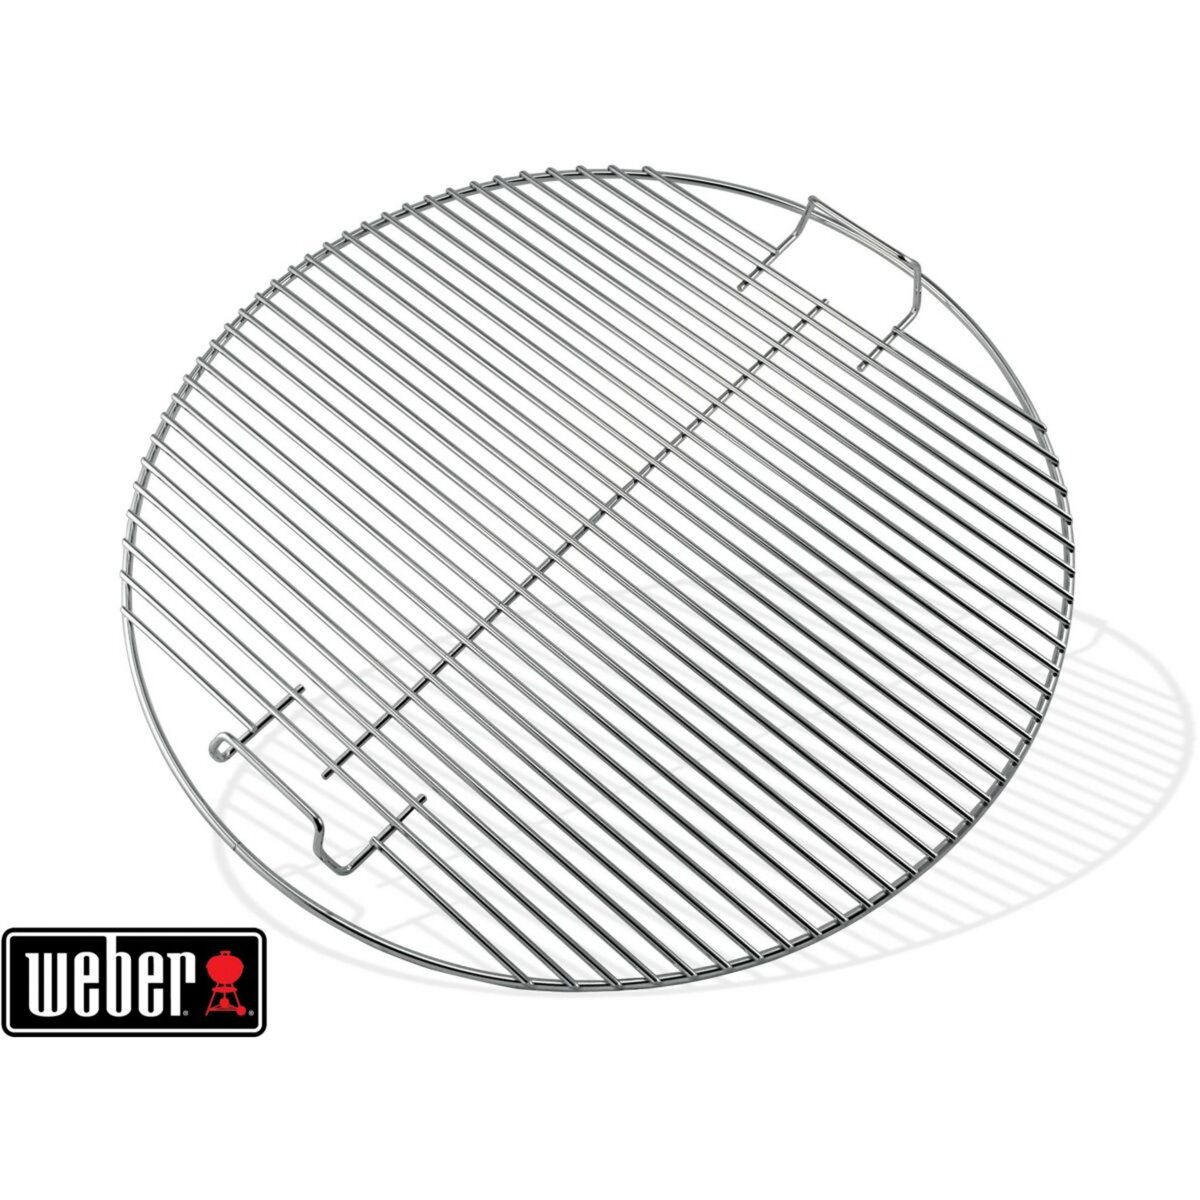 Weber Grille barbecue de cuisson chromée pour barbecue 47 cm